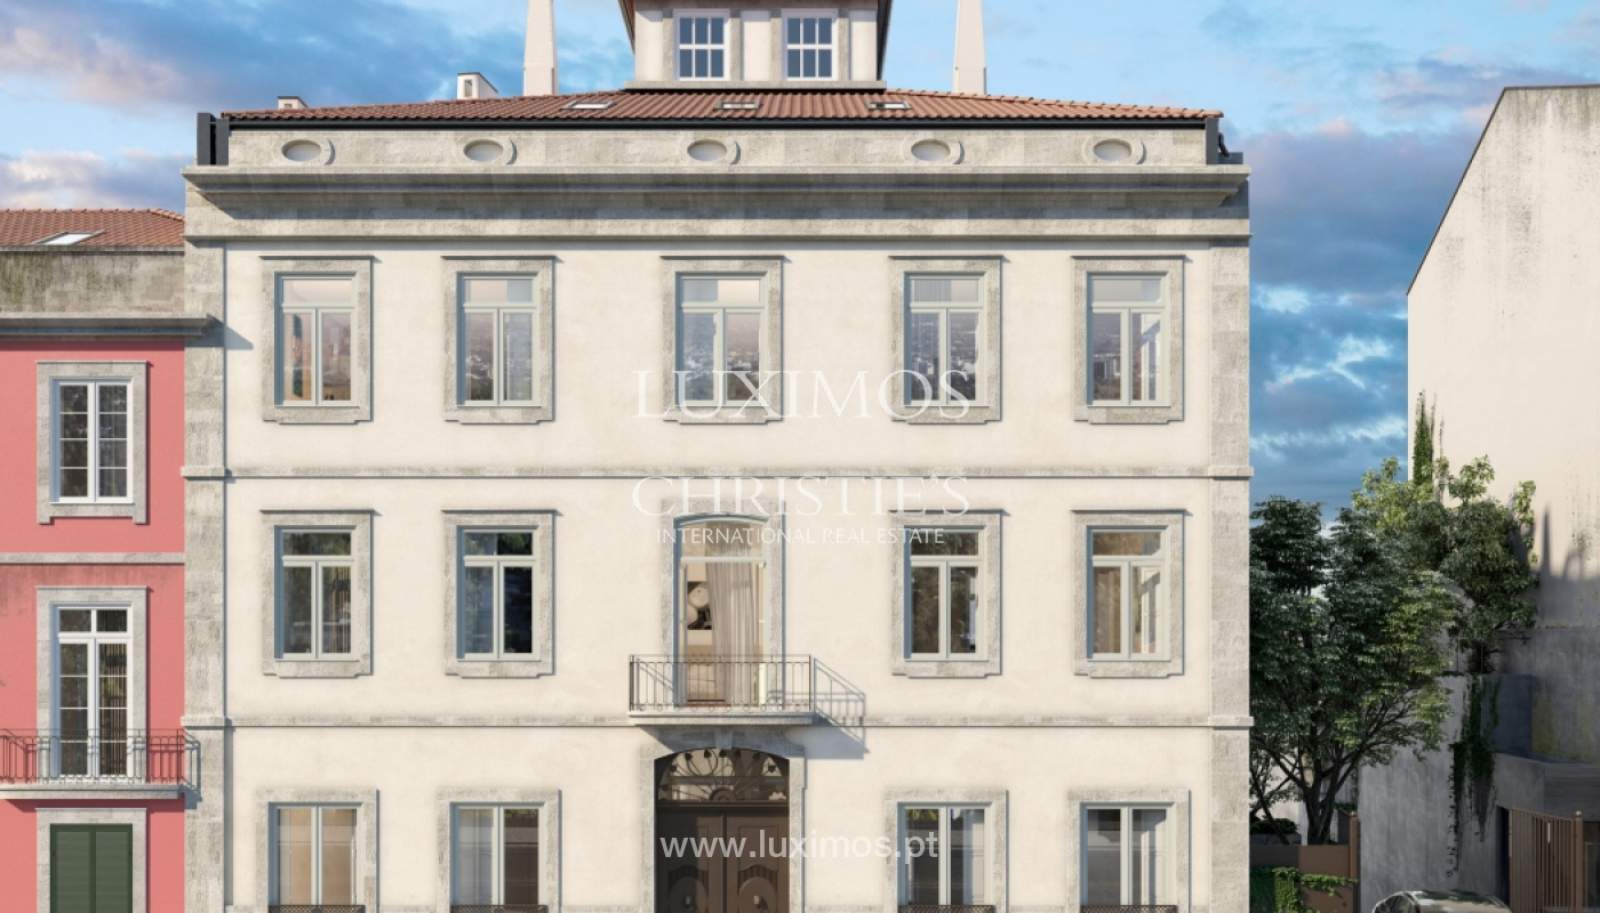 Venda apartamento novo, empreendimento de alto padrão, Porto, Portugal_161688